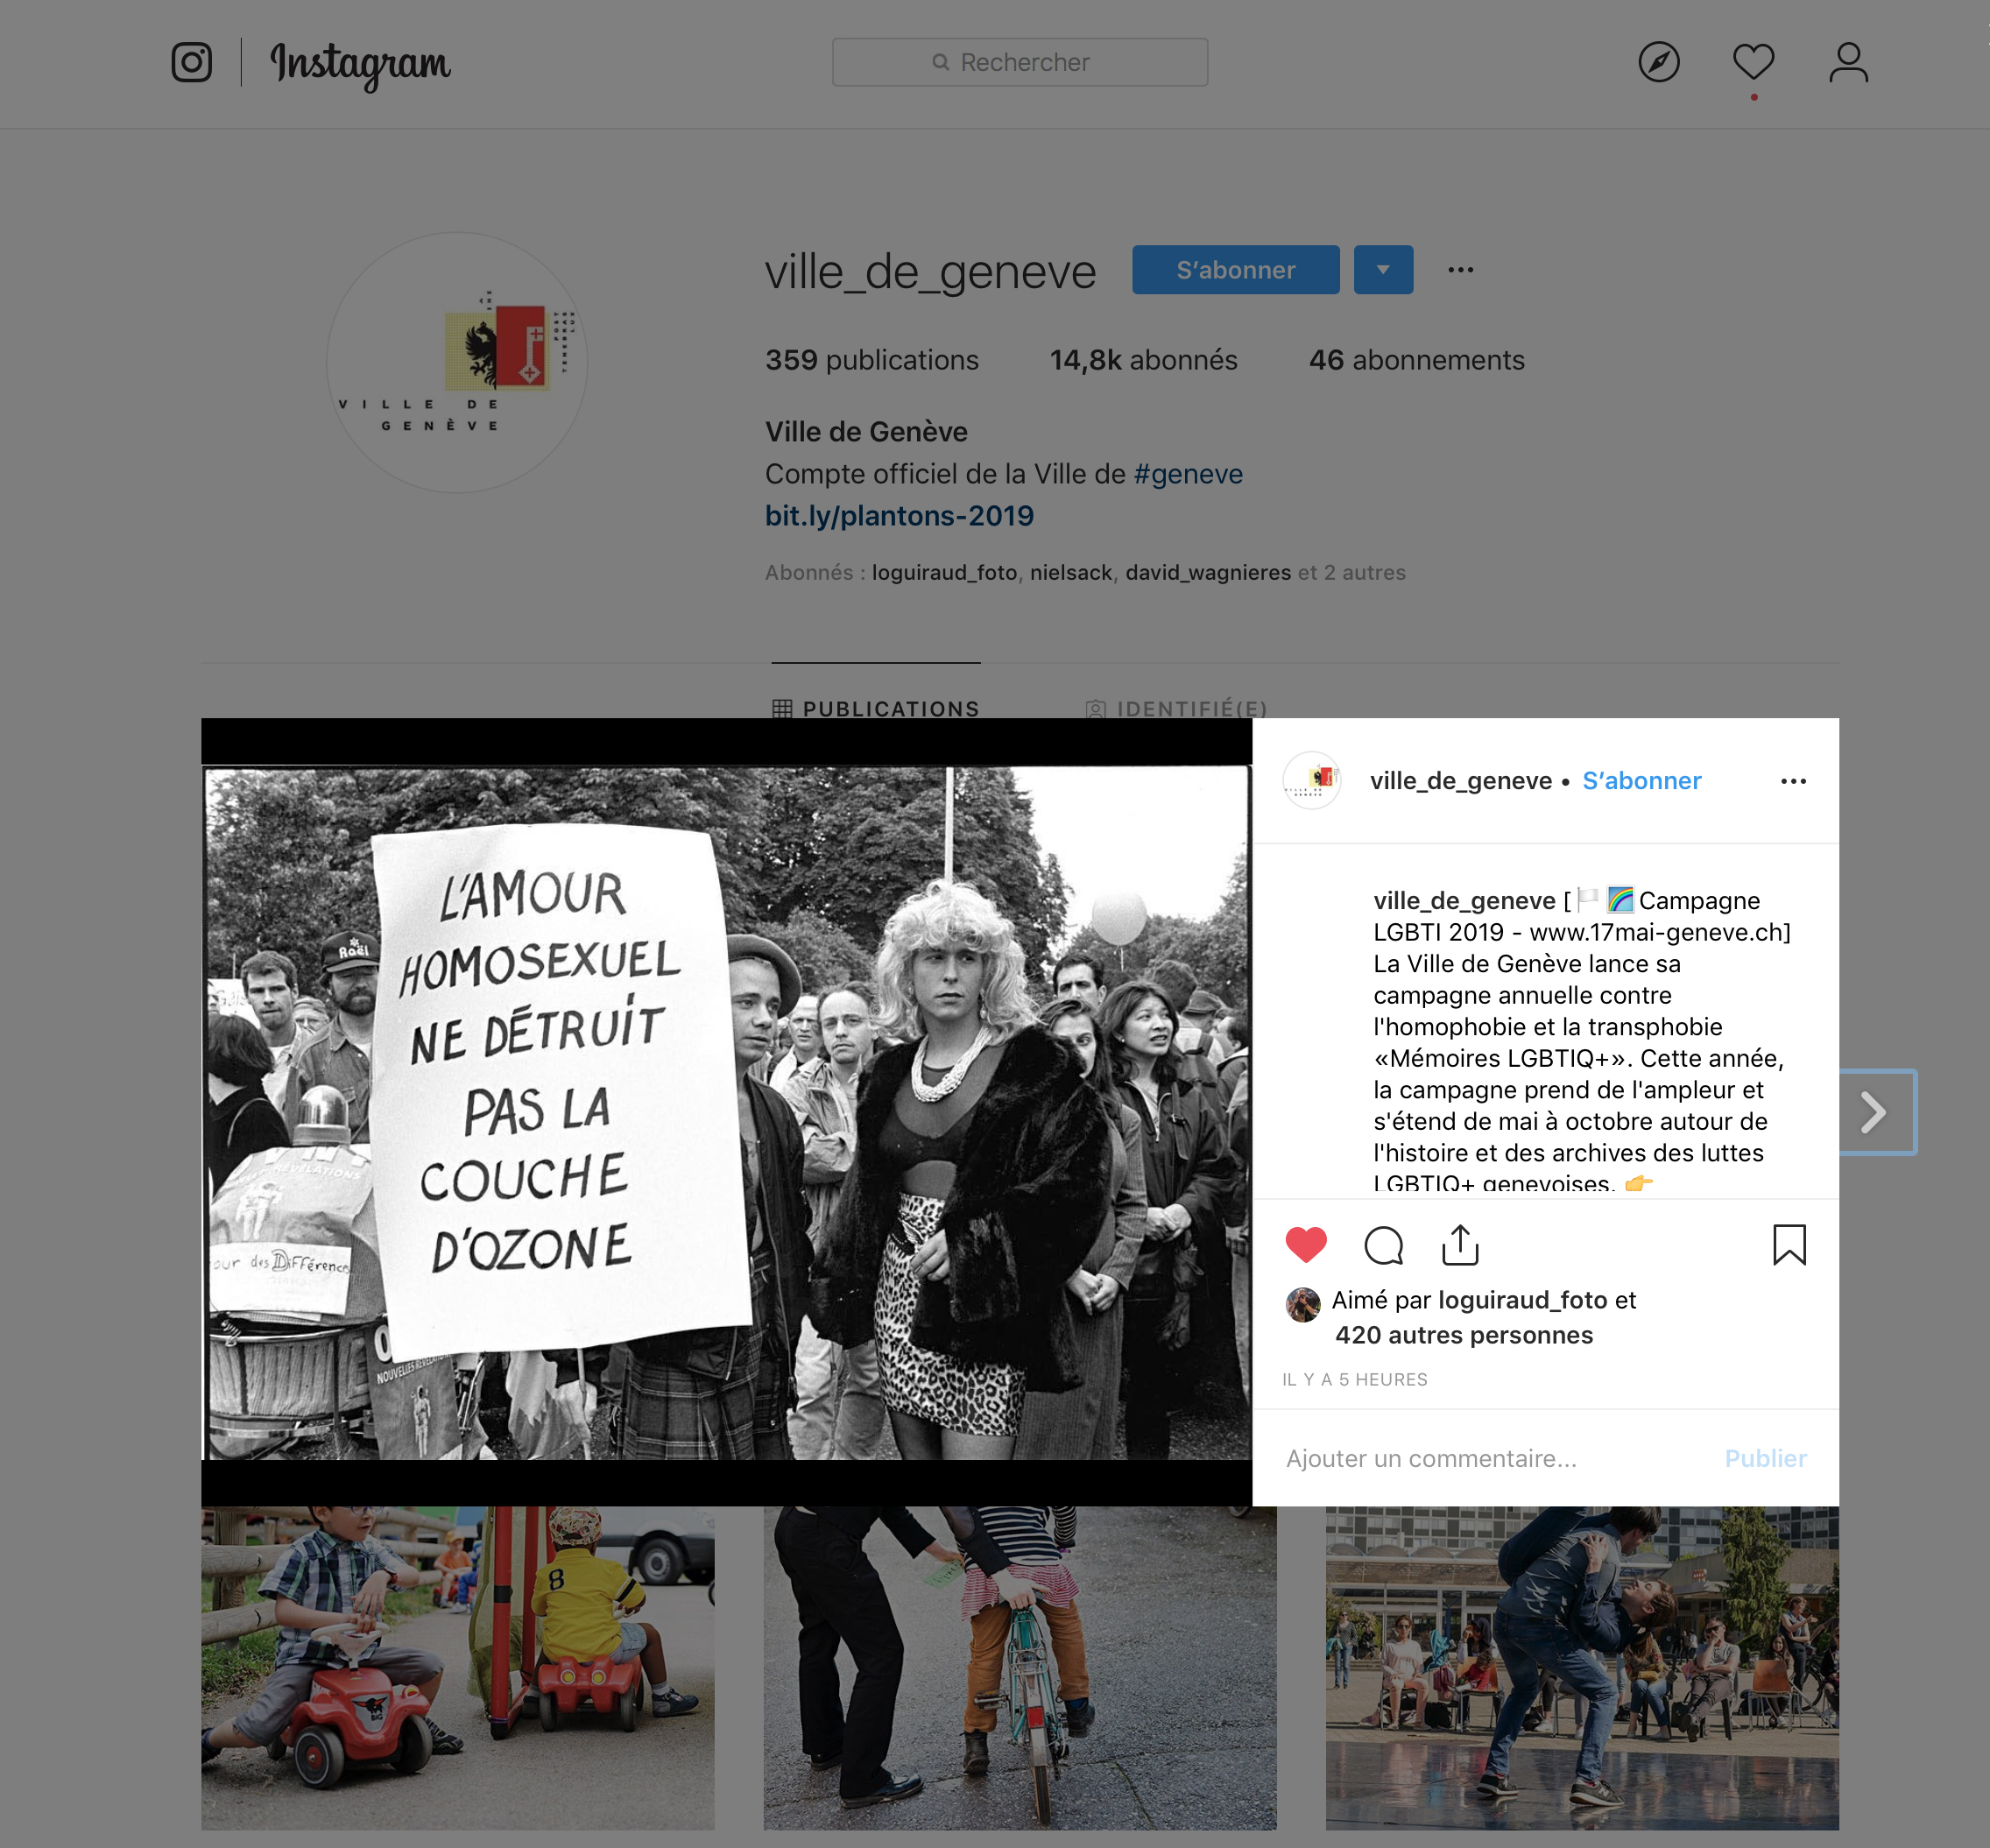 Vile de Genève. Instagram. Campagne LGBTI 2019 .(click image to enlarge)